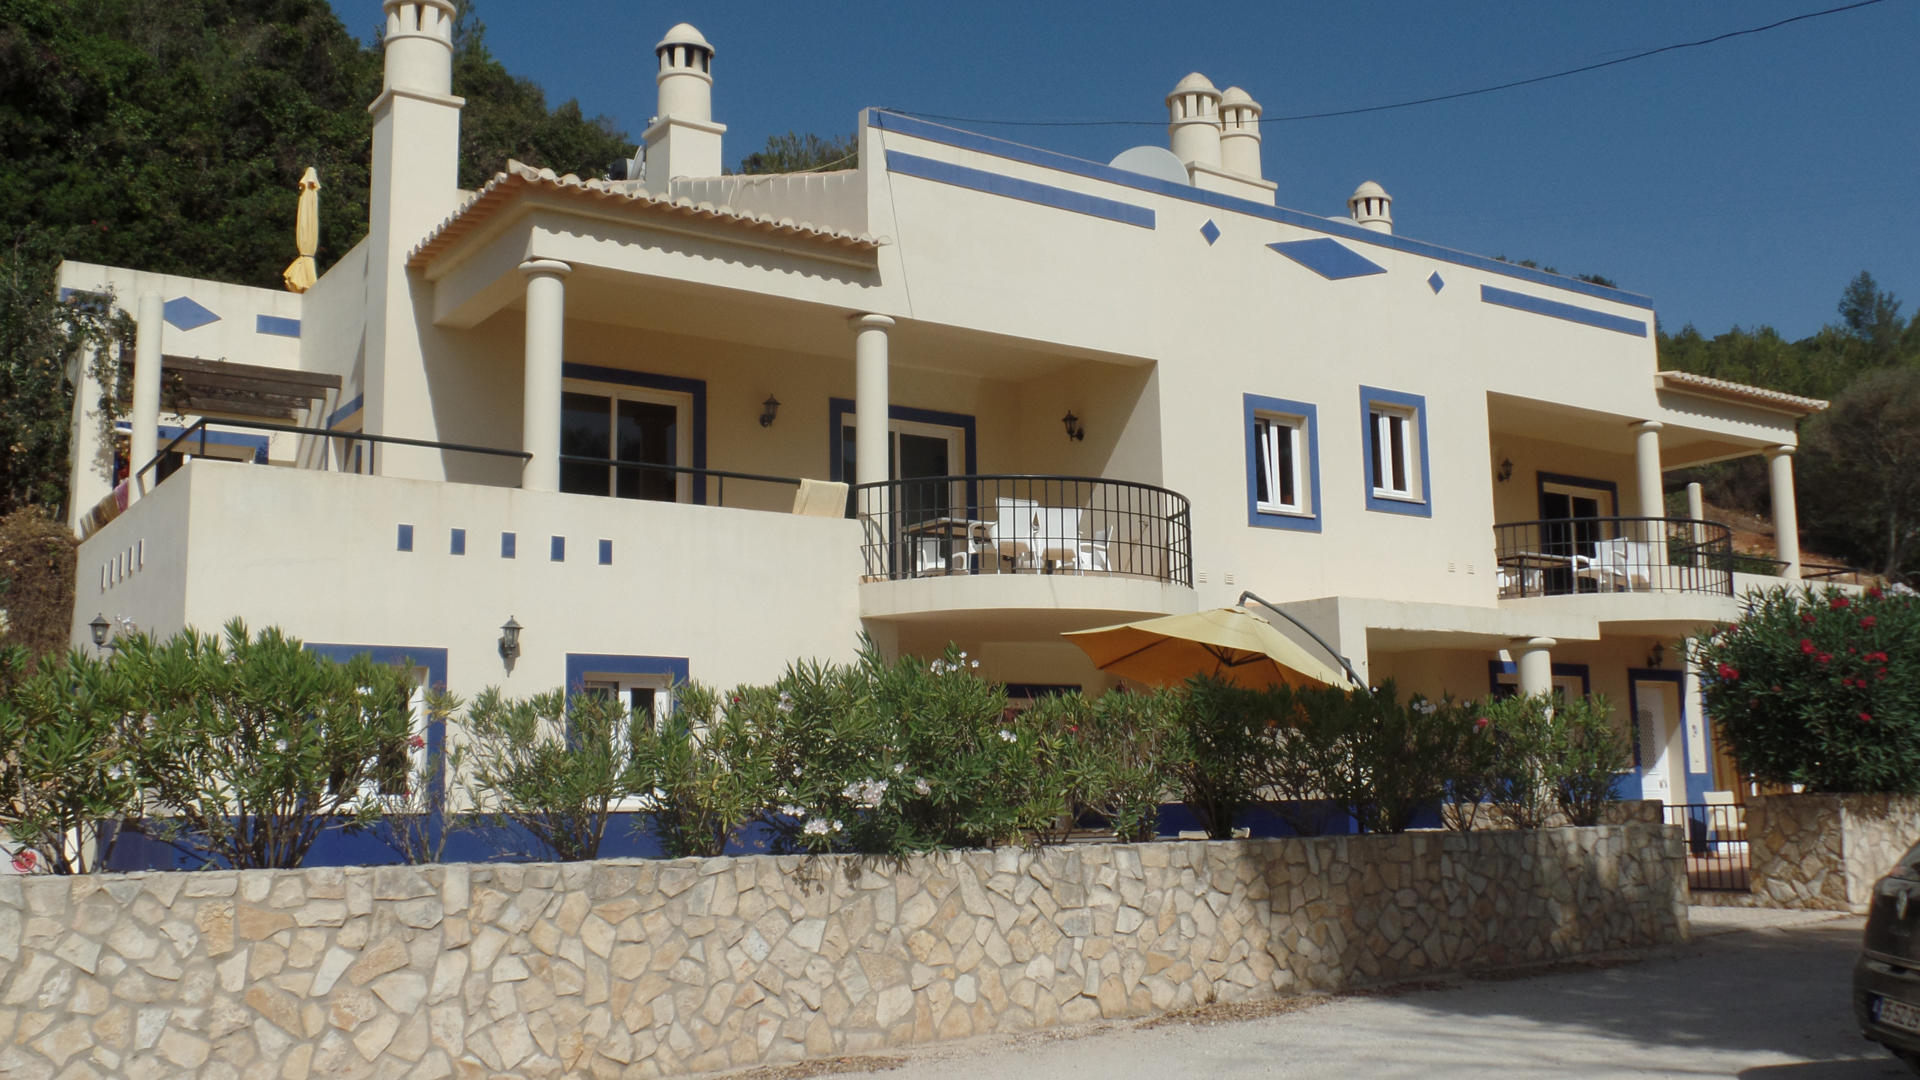 Geräumiges, einzigartiges Apartment mit grosser Terrasse & Vermietungspotential Salema Strand, West Algarve | LG917 